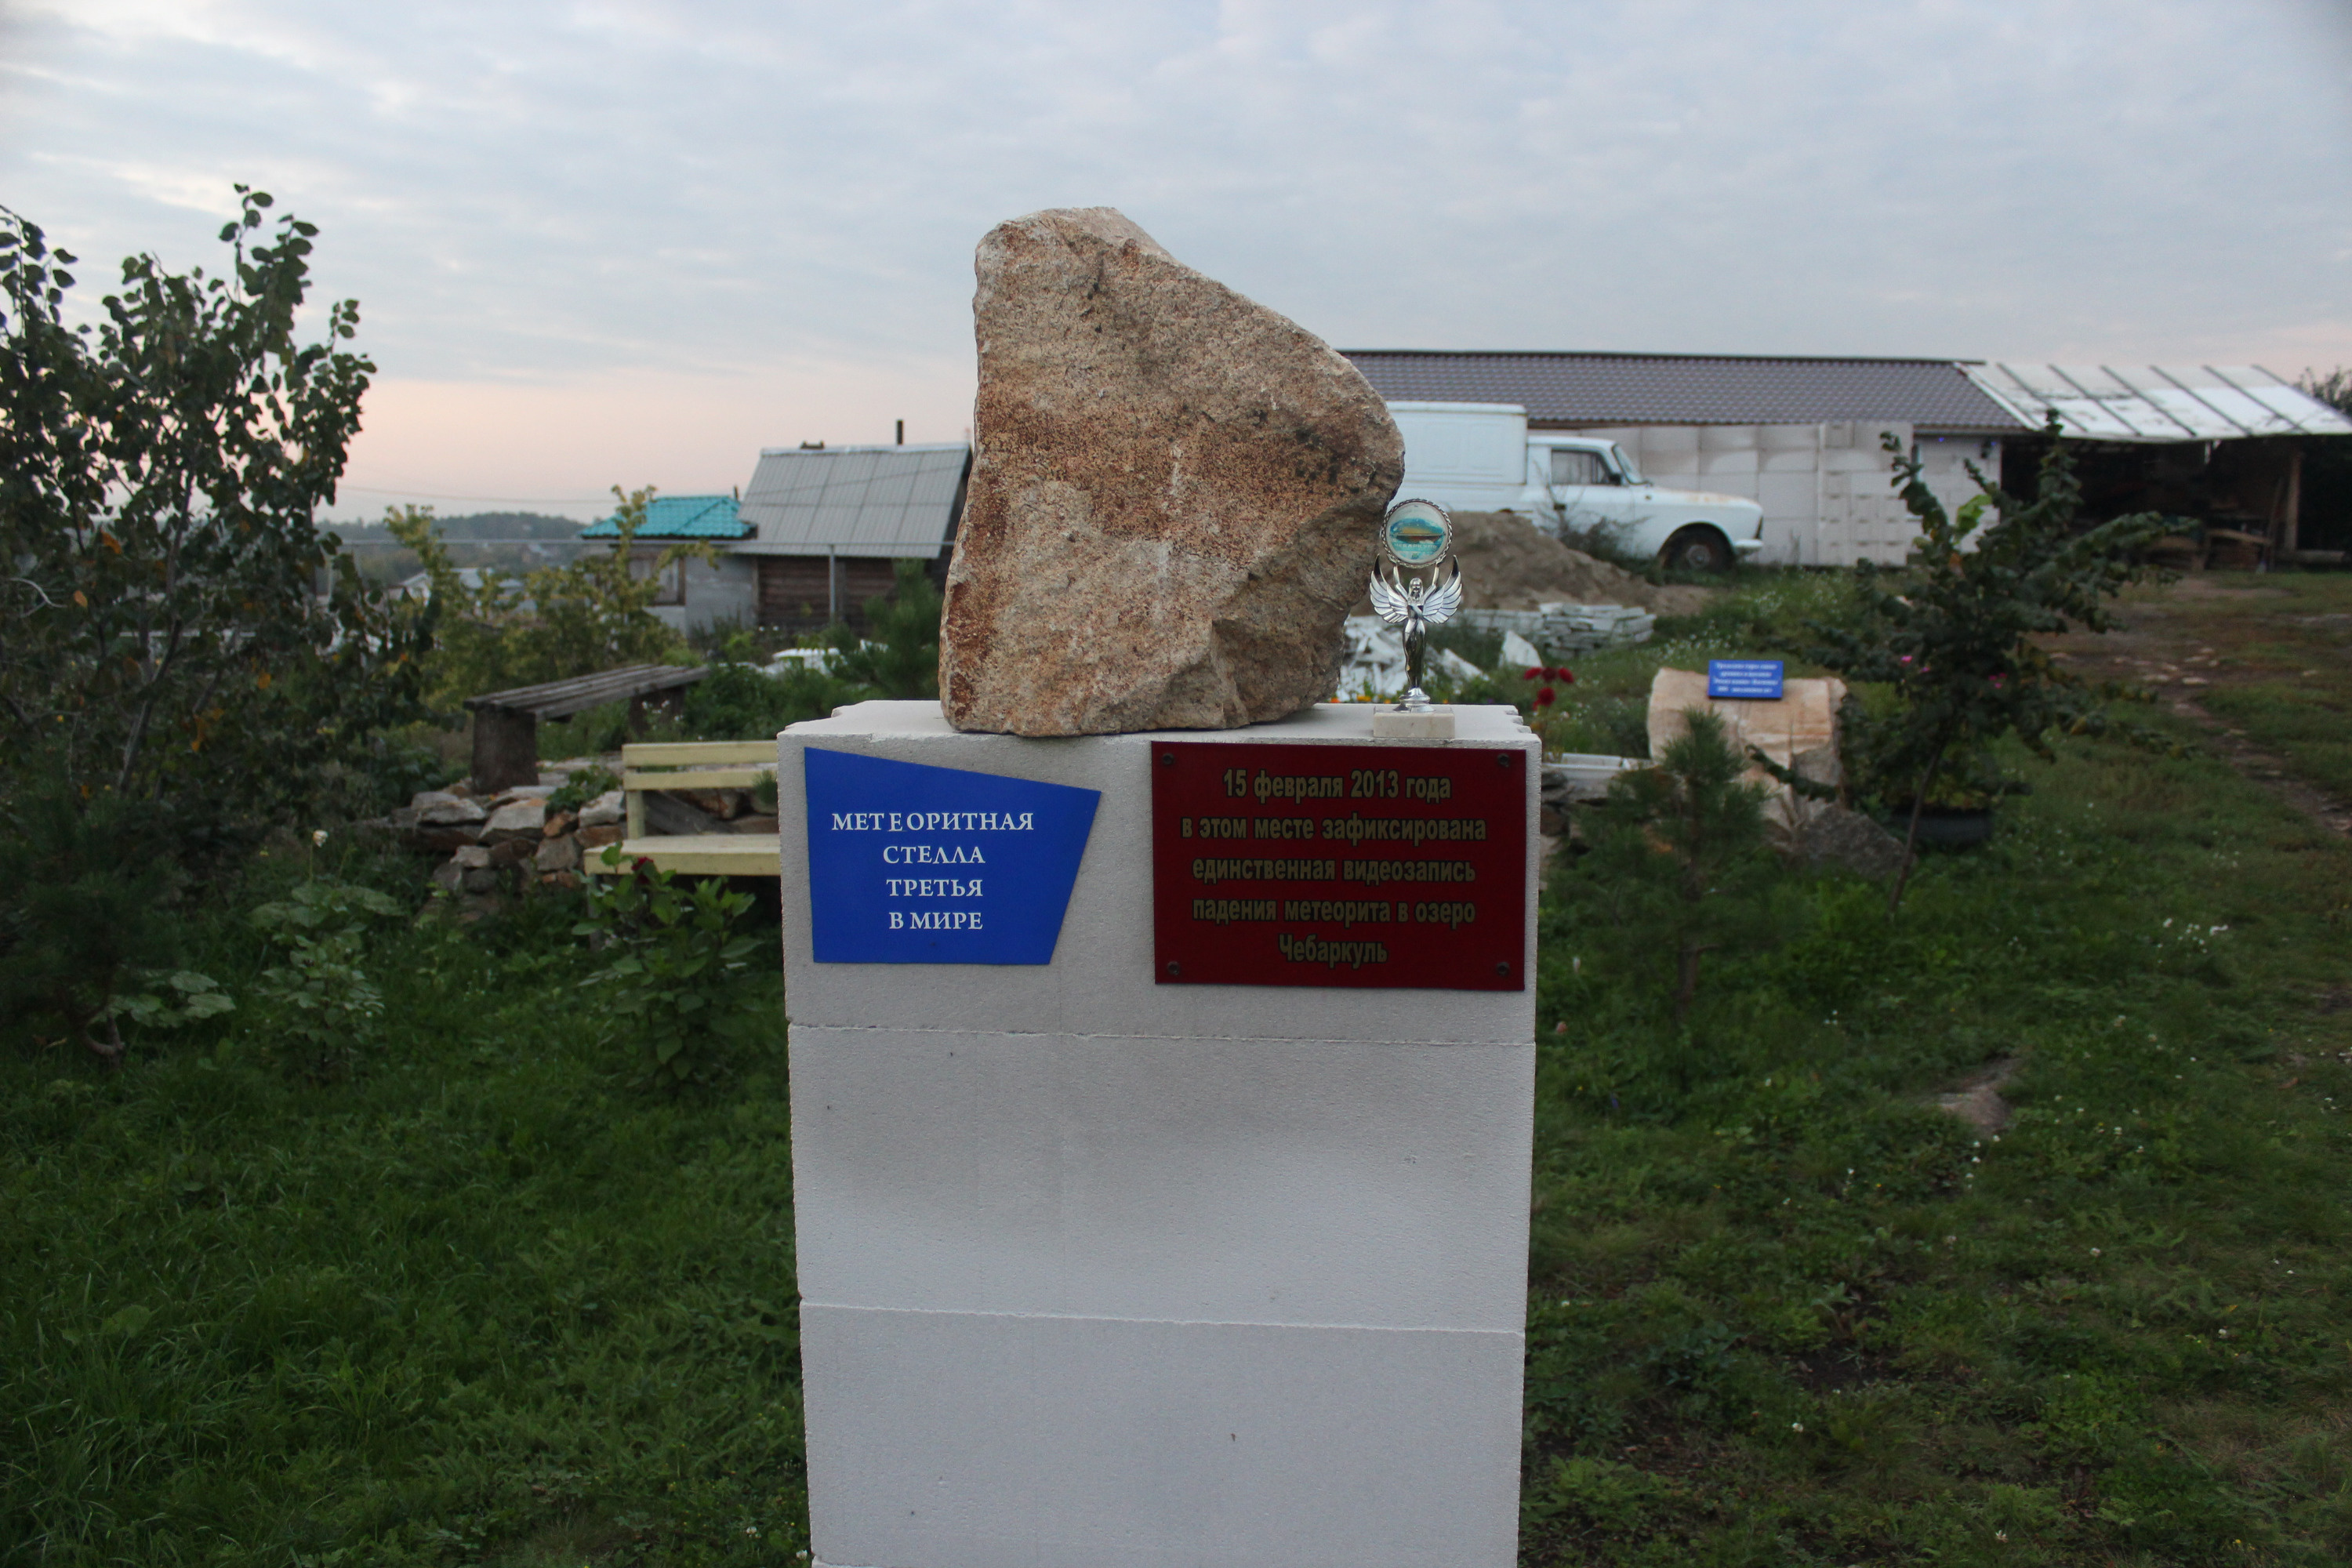 Чебаркулец Николай Мельников поставил памятник метеориту на своем участке